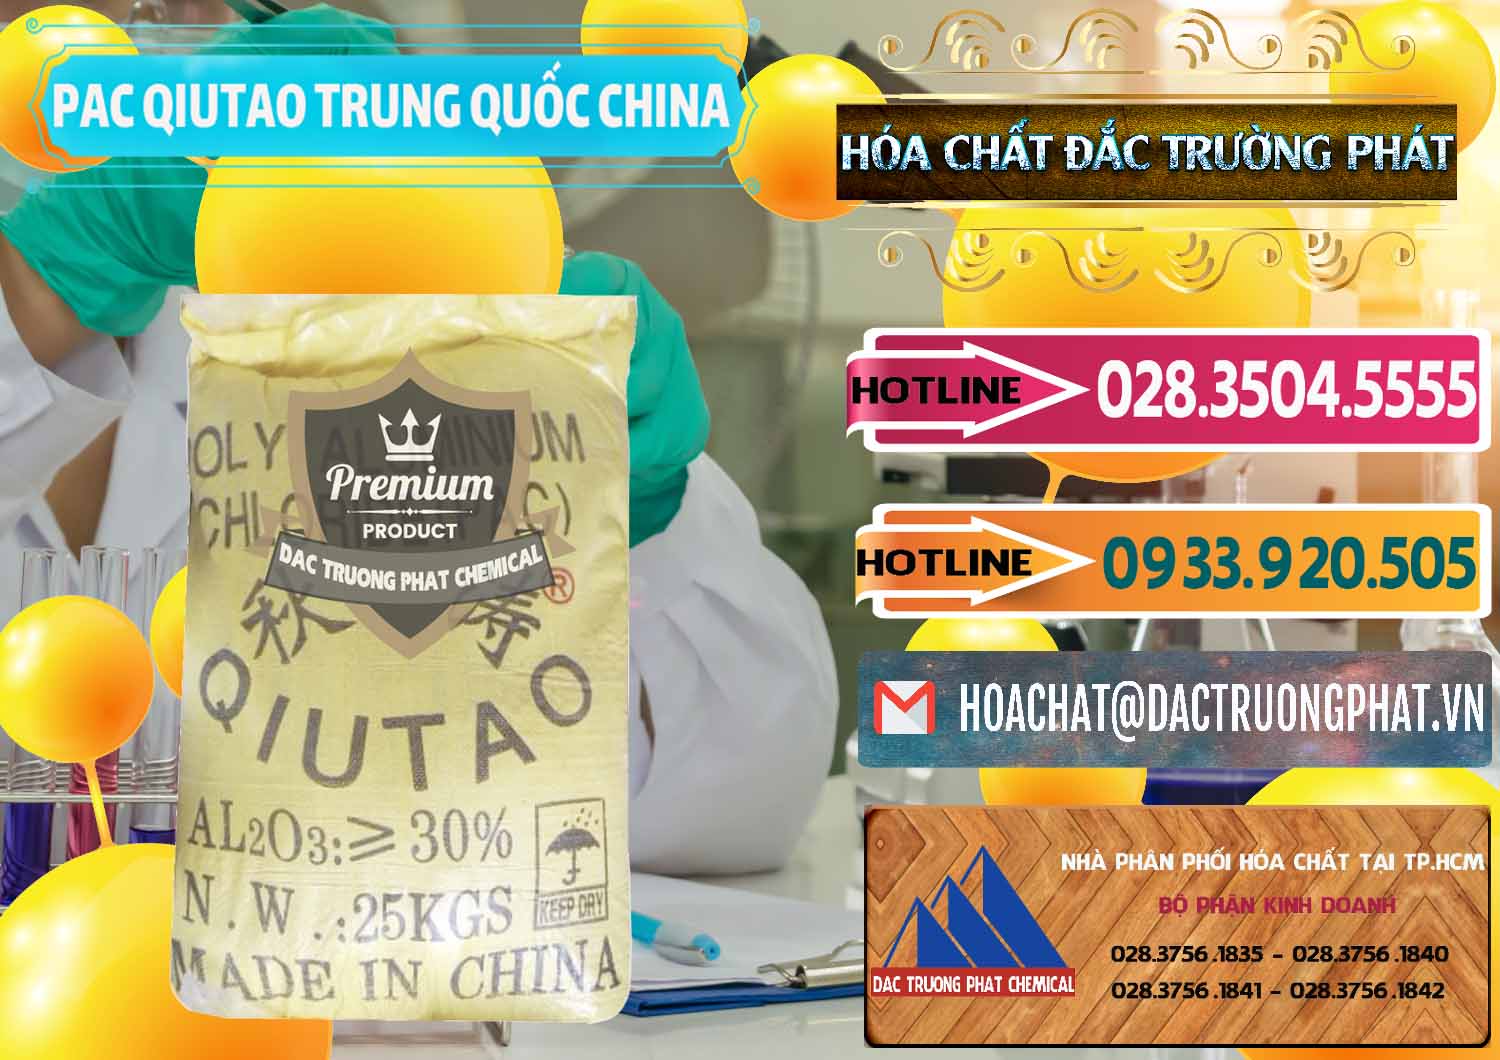 Cung cấp - bán PAC - Polyaluminium Chloride Qiutao Trung Quốc China - 0267 - Nhà cung cấp và phân phối hóa chất tại TP.HCM - dactruongphat.vn